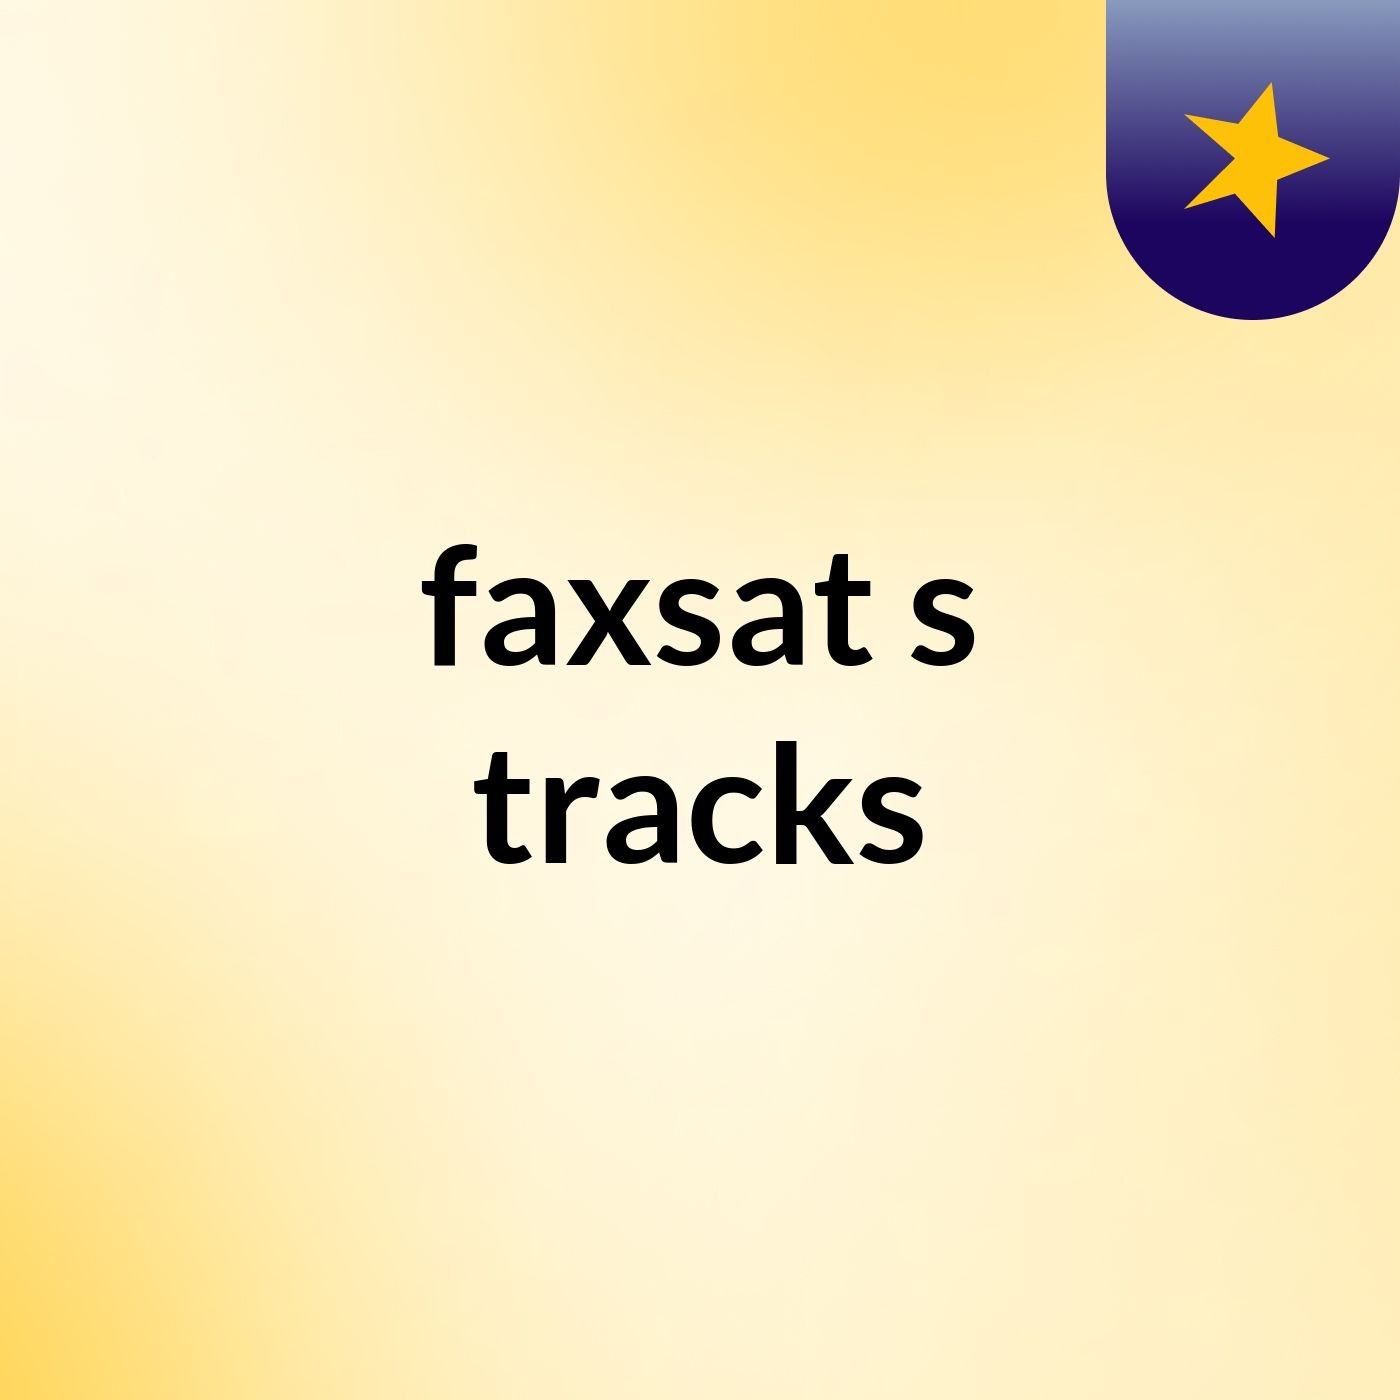 faxsat's tracks